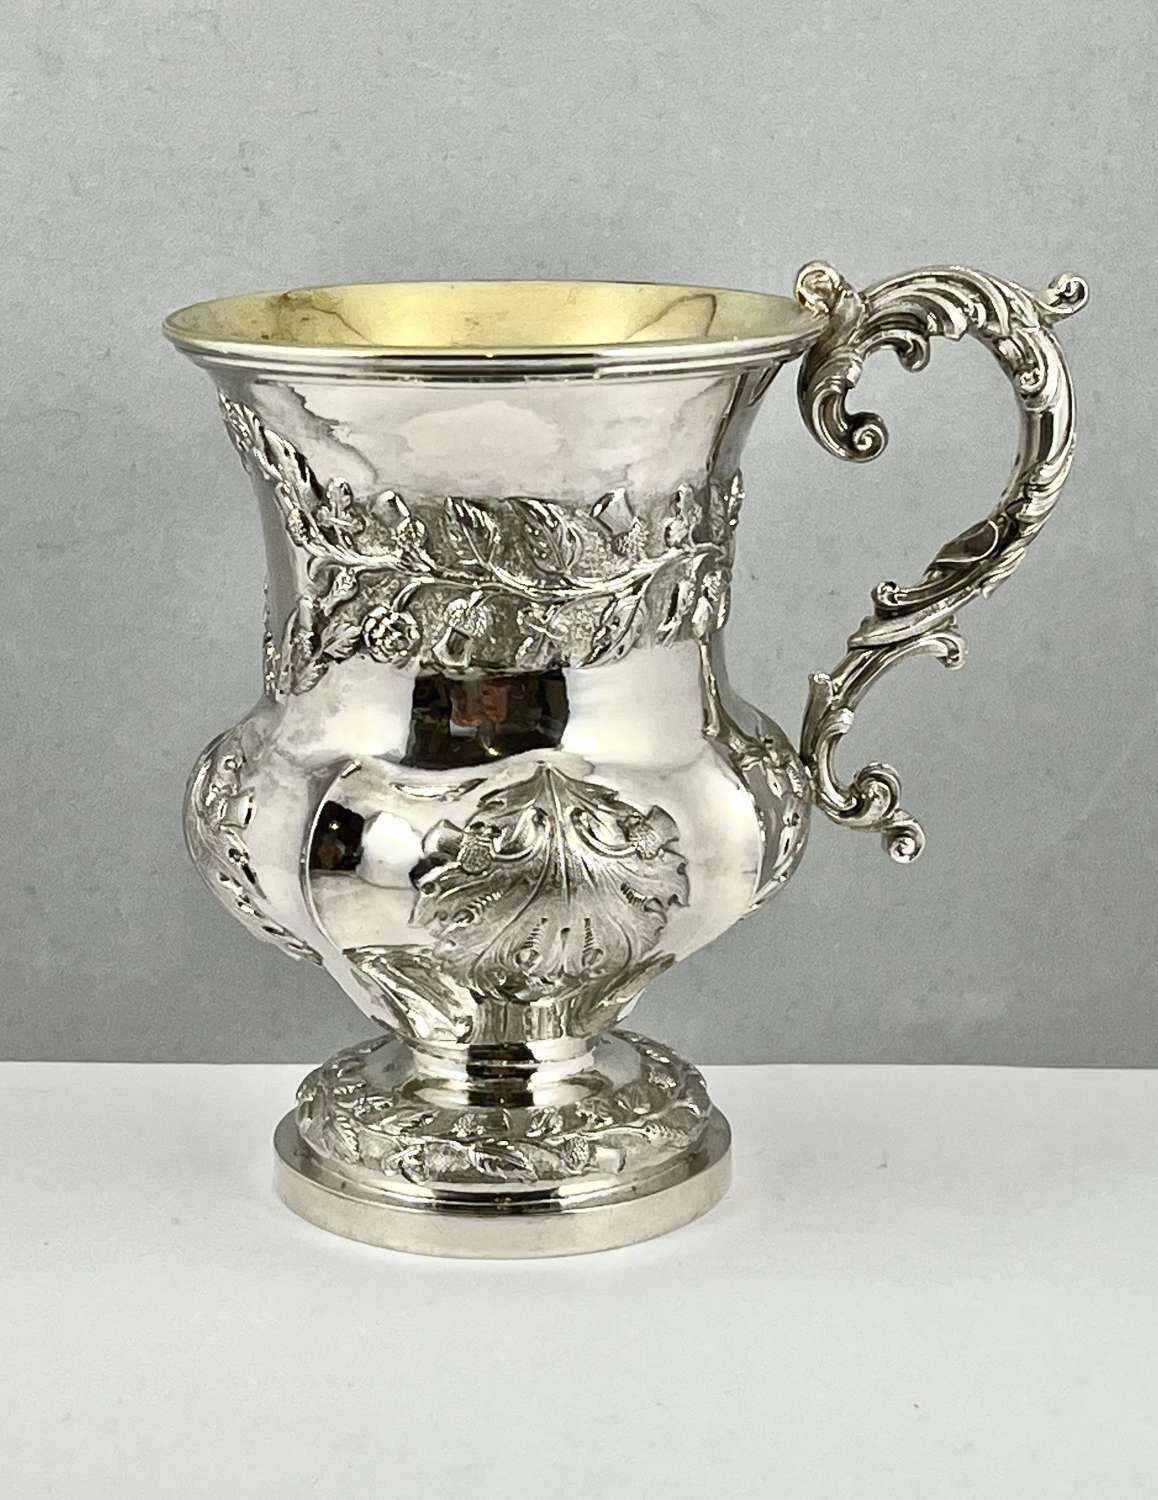 William IV style silver mug with Scottish decoration, c. 1900